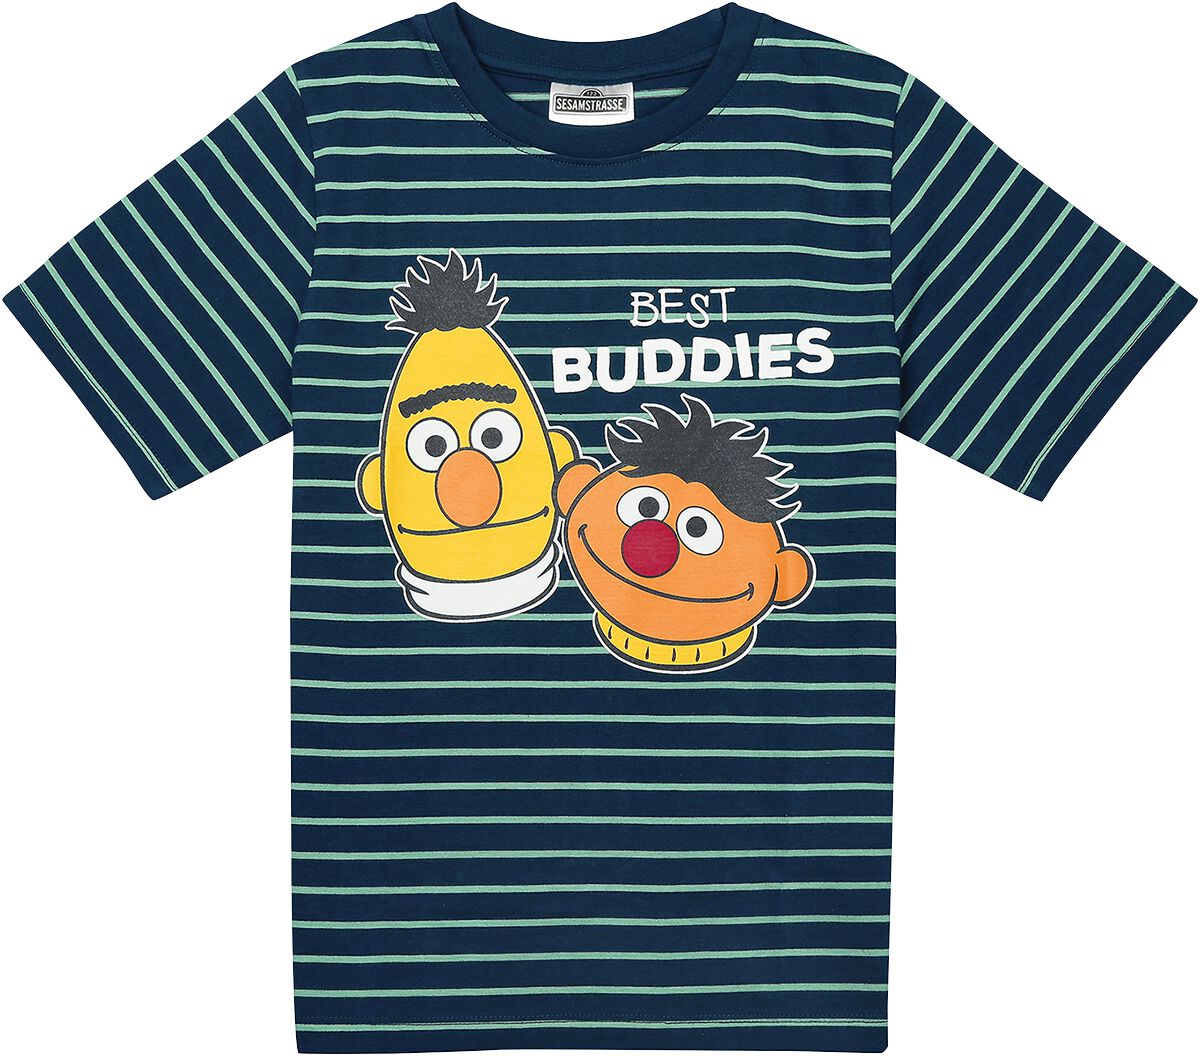 Sesamstraße T-Shirt - Kids - Ernie und Bert - Best Buddies - 116 bis 140 - Größe 140 - blau/grün  - EMP exklusives Merchandise!